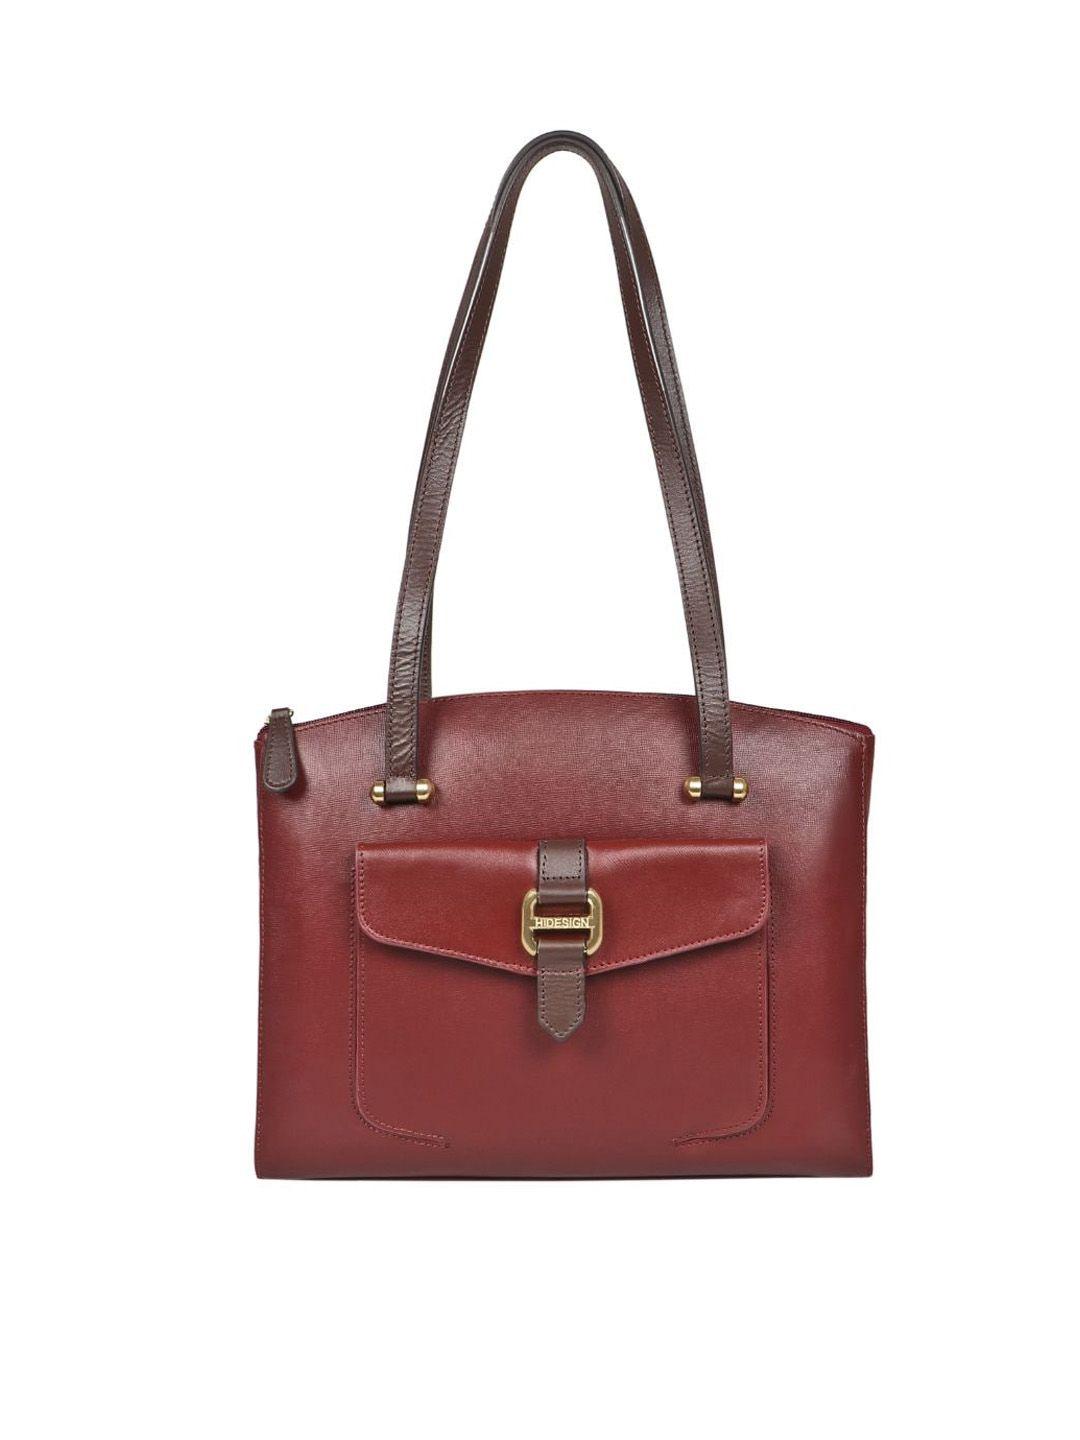 hidesign-buckle-detail-leather-structured-shoulder-bag